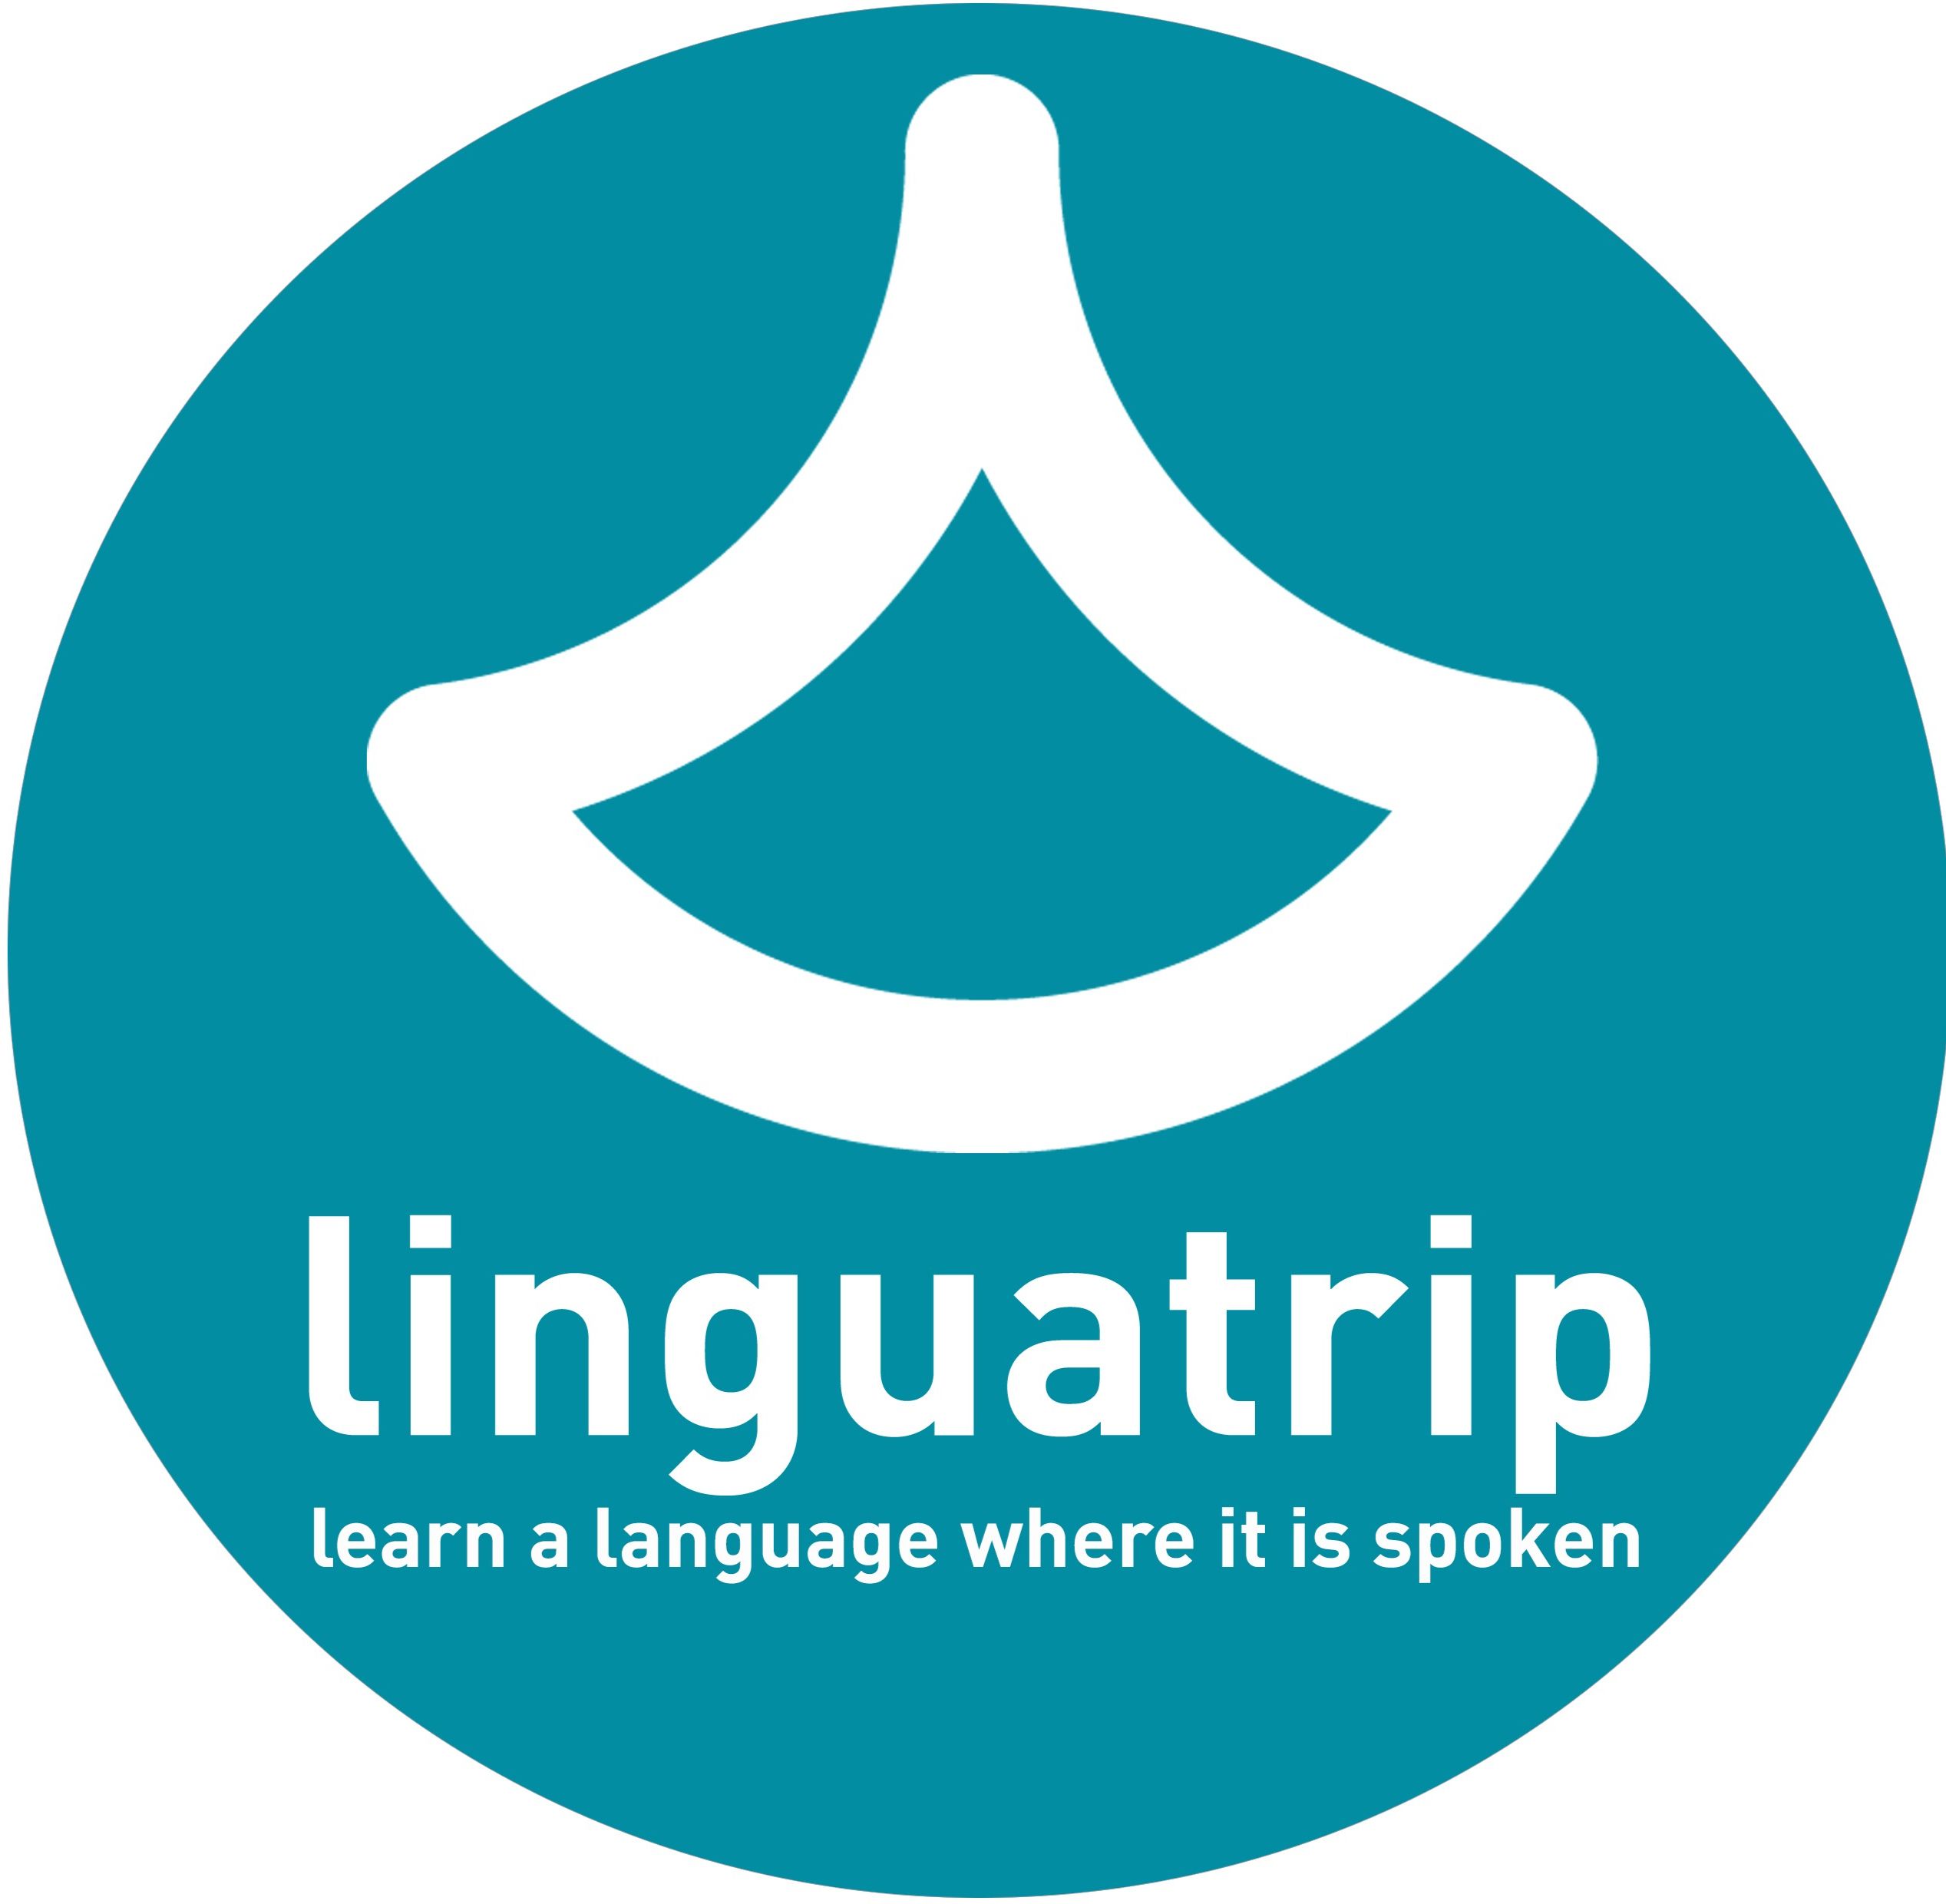 21 сайт для программиста, которые помогут заговорить на английском